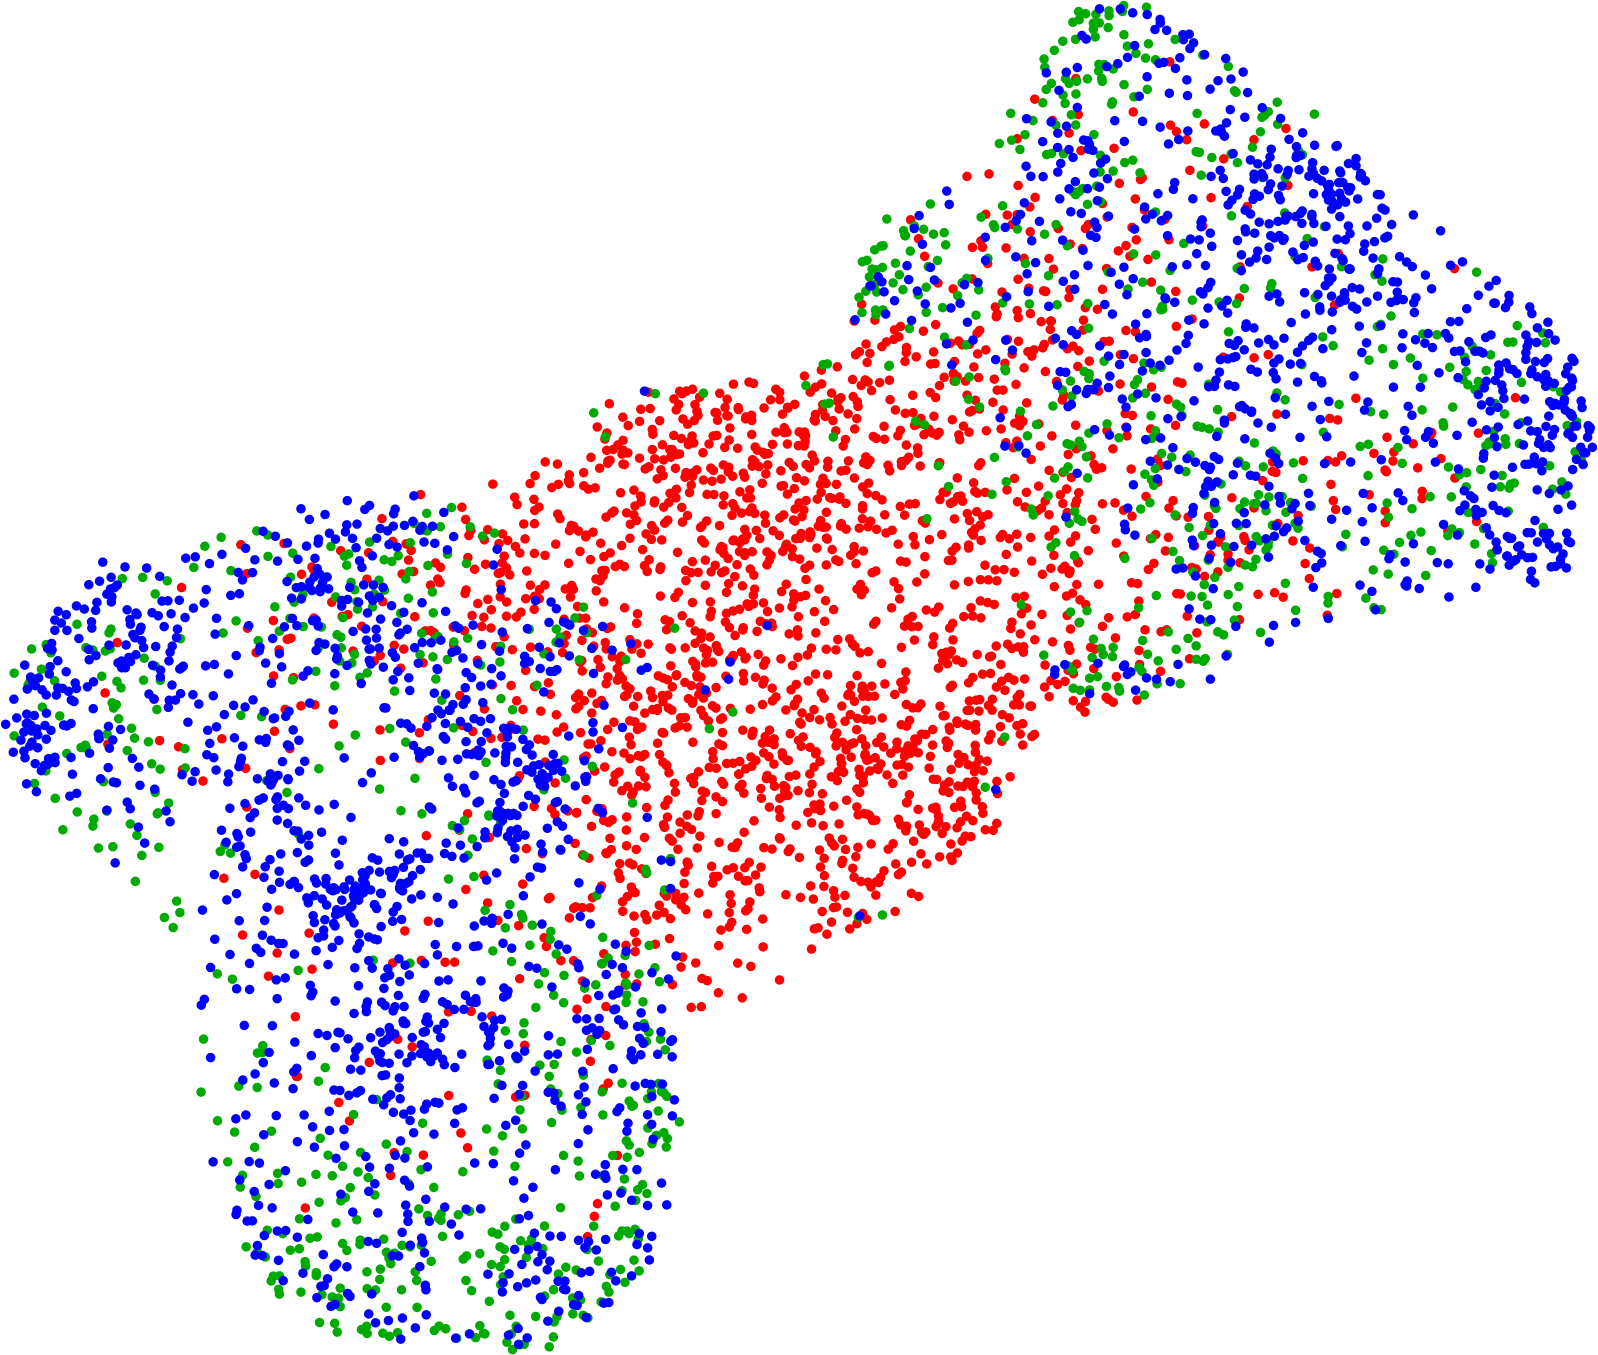 UMAP plot of generated palettes